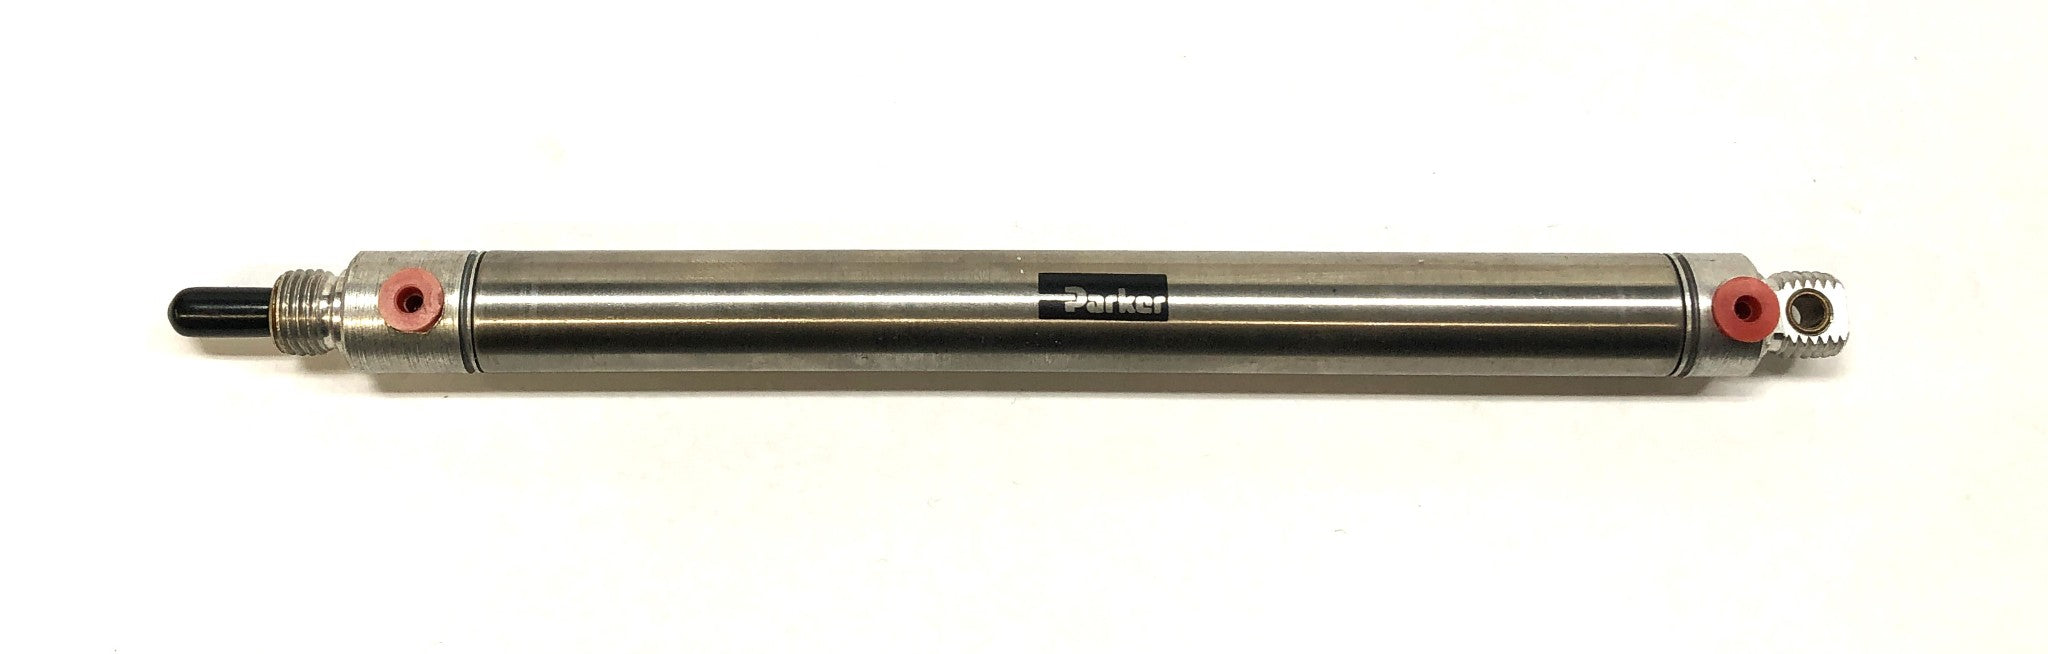 Parker Double Acting Pneumatic Air Cylinder .56DXPSR05.0 NOS